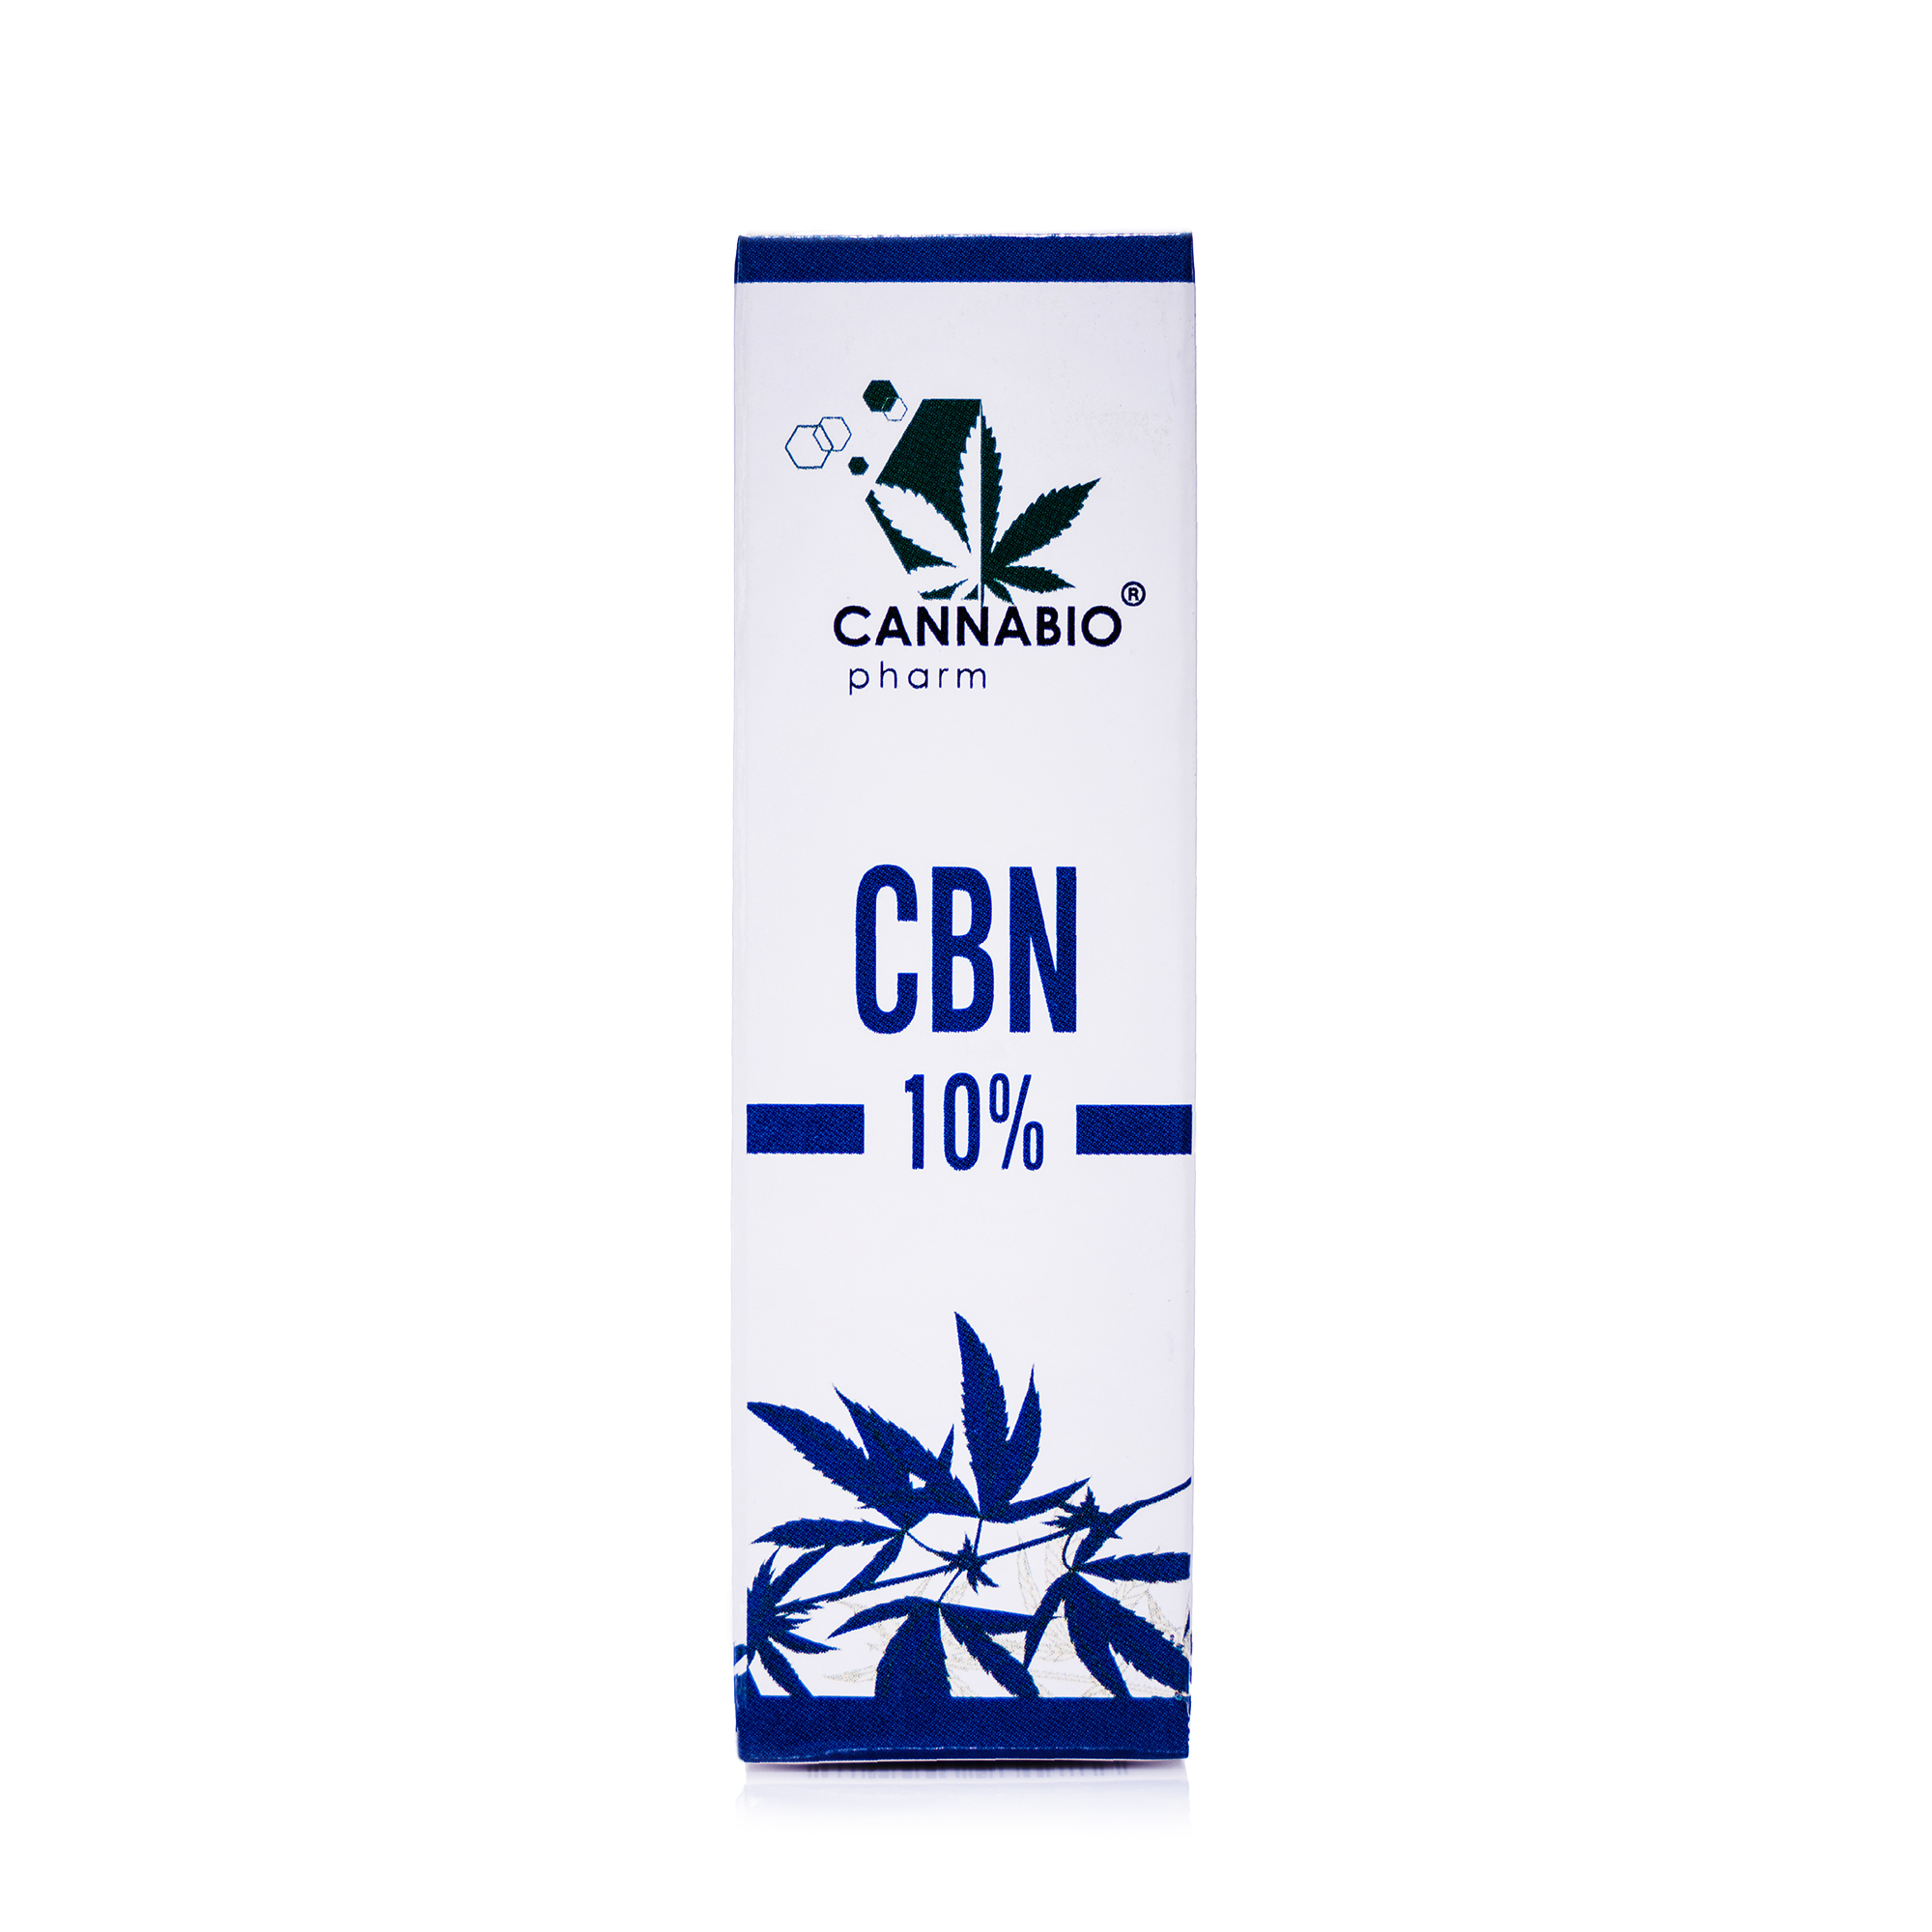 CANNABIOpharm CBN 10% 10ml